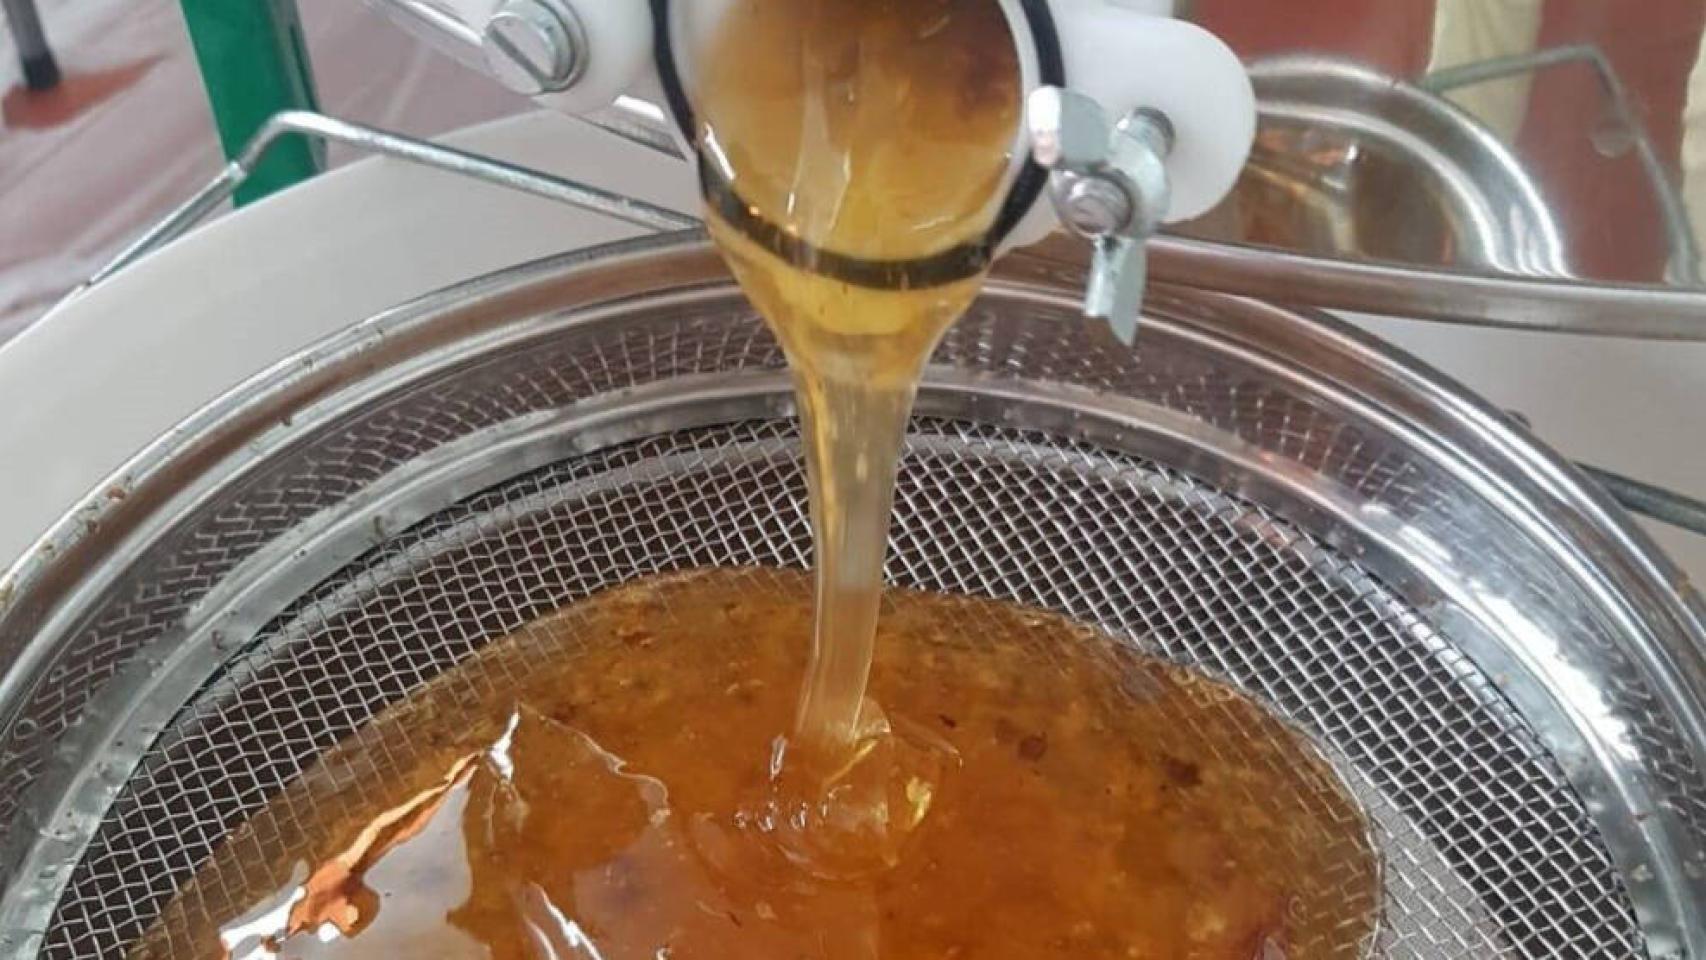 Extracción en frío de la miel de un apicultor.  Foto: EVA GONZÁLEZ/EUROPA PRESS - Archivo